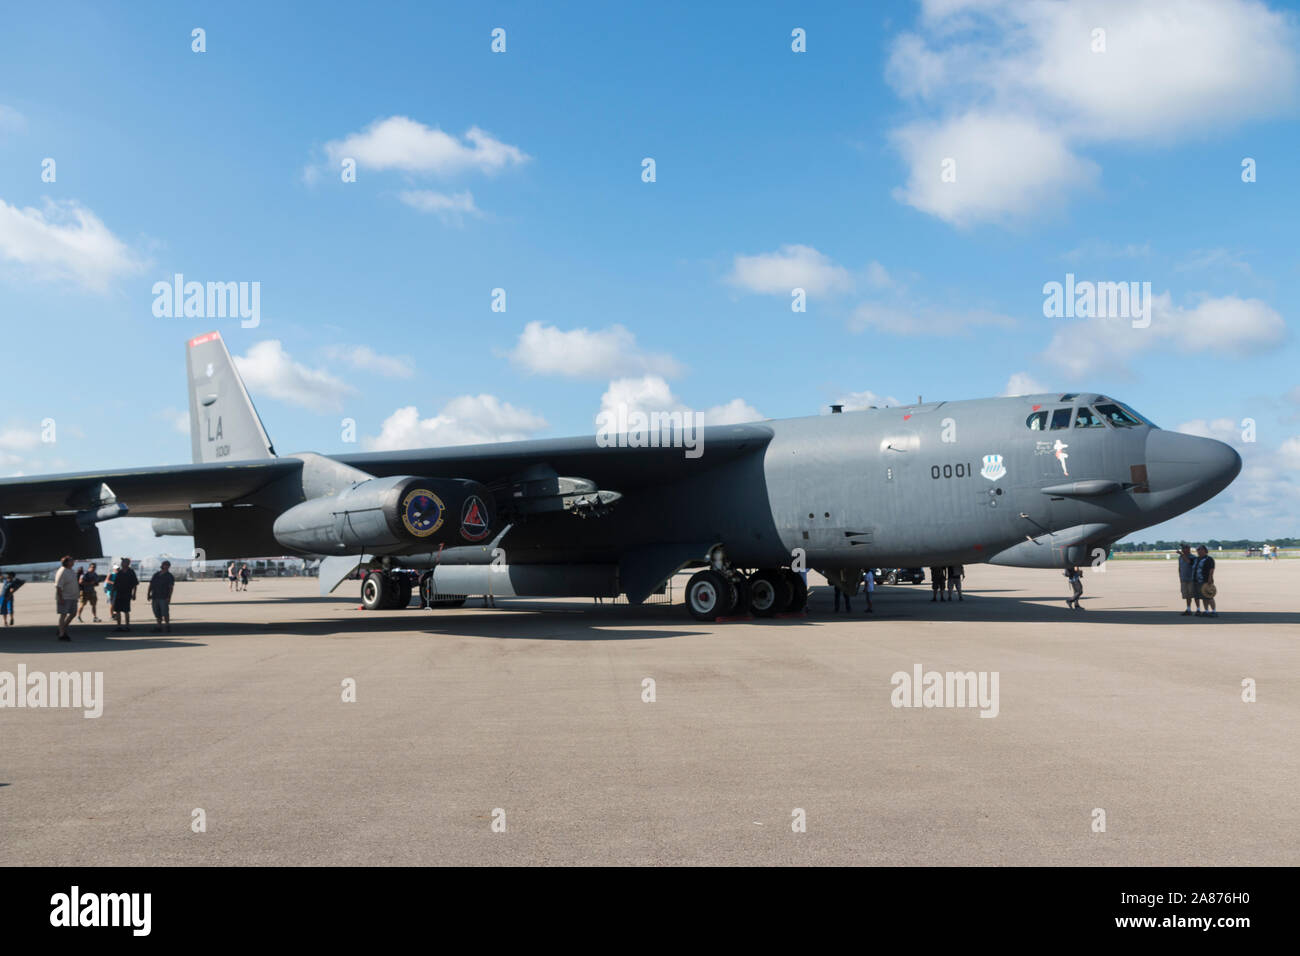 Un United States Air Force B-52 Stratofortress se trouve en exposition statique à l'Airshow de Dayton Vectren 2018. Banque D'Images